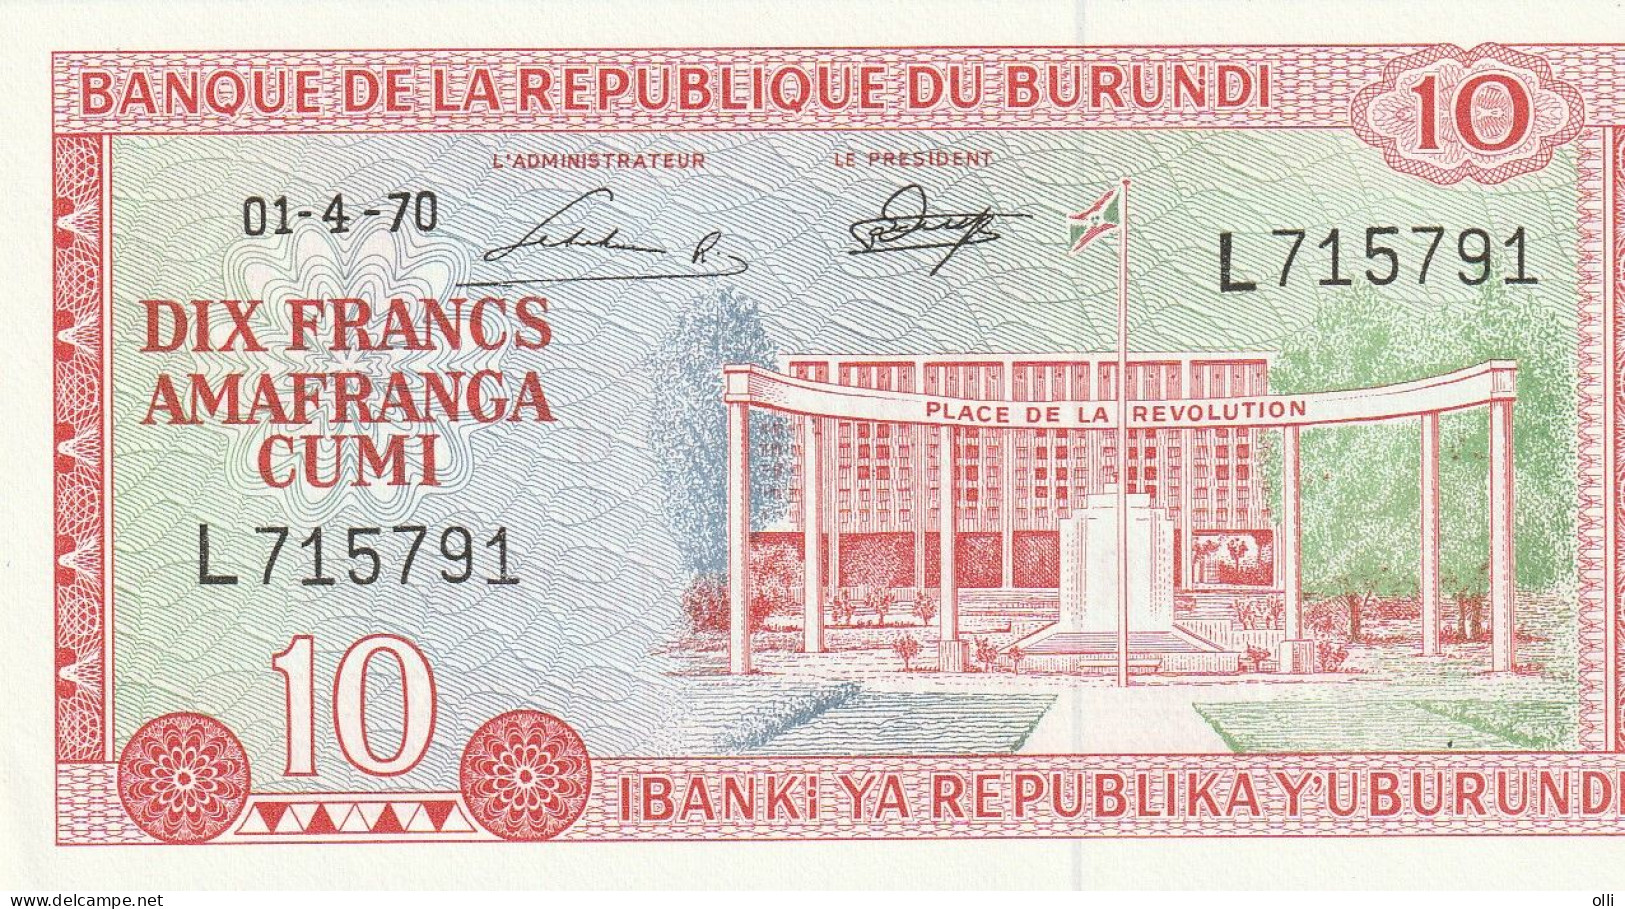 Burundi 10 Francs, 1970 P-20b  UNC - Burundi